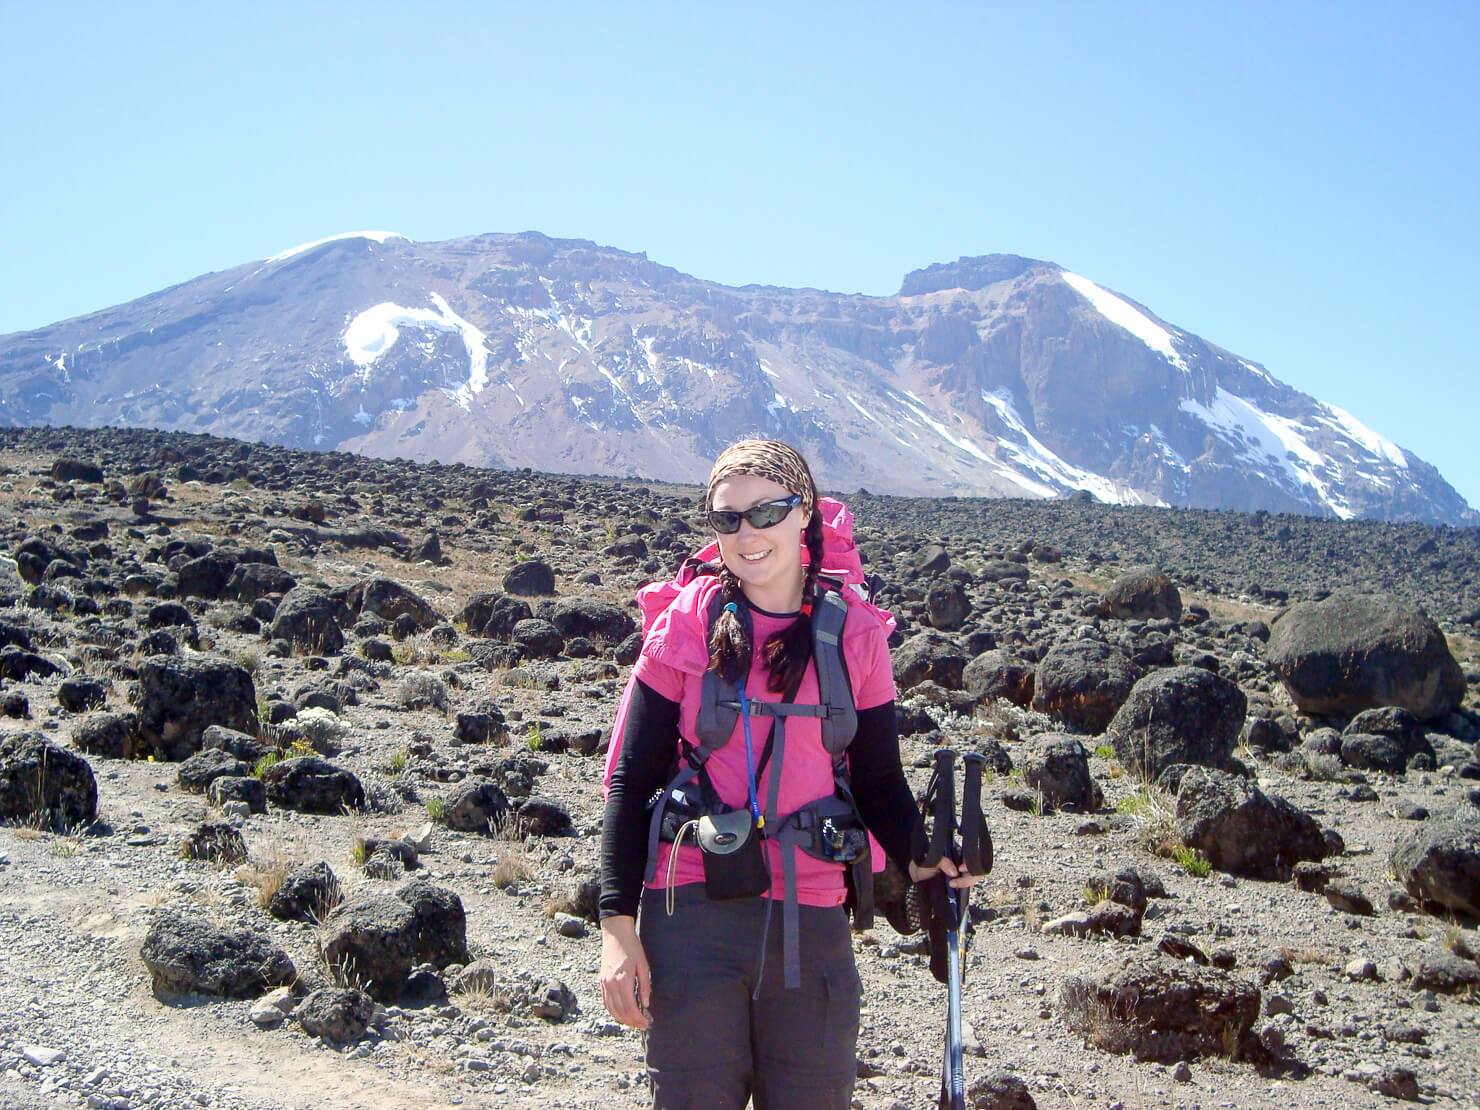 Comment se préparer à l'ascension du mont Kilimandjaro et les meilleurs conseils pour atteindre le sommet